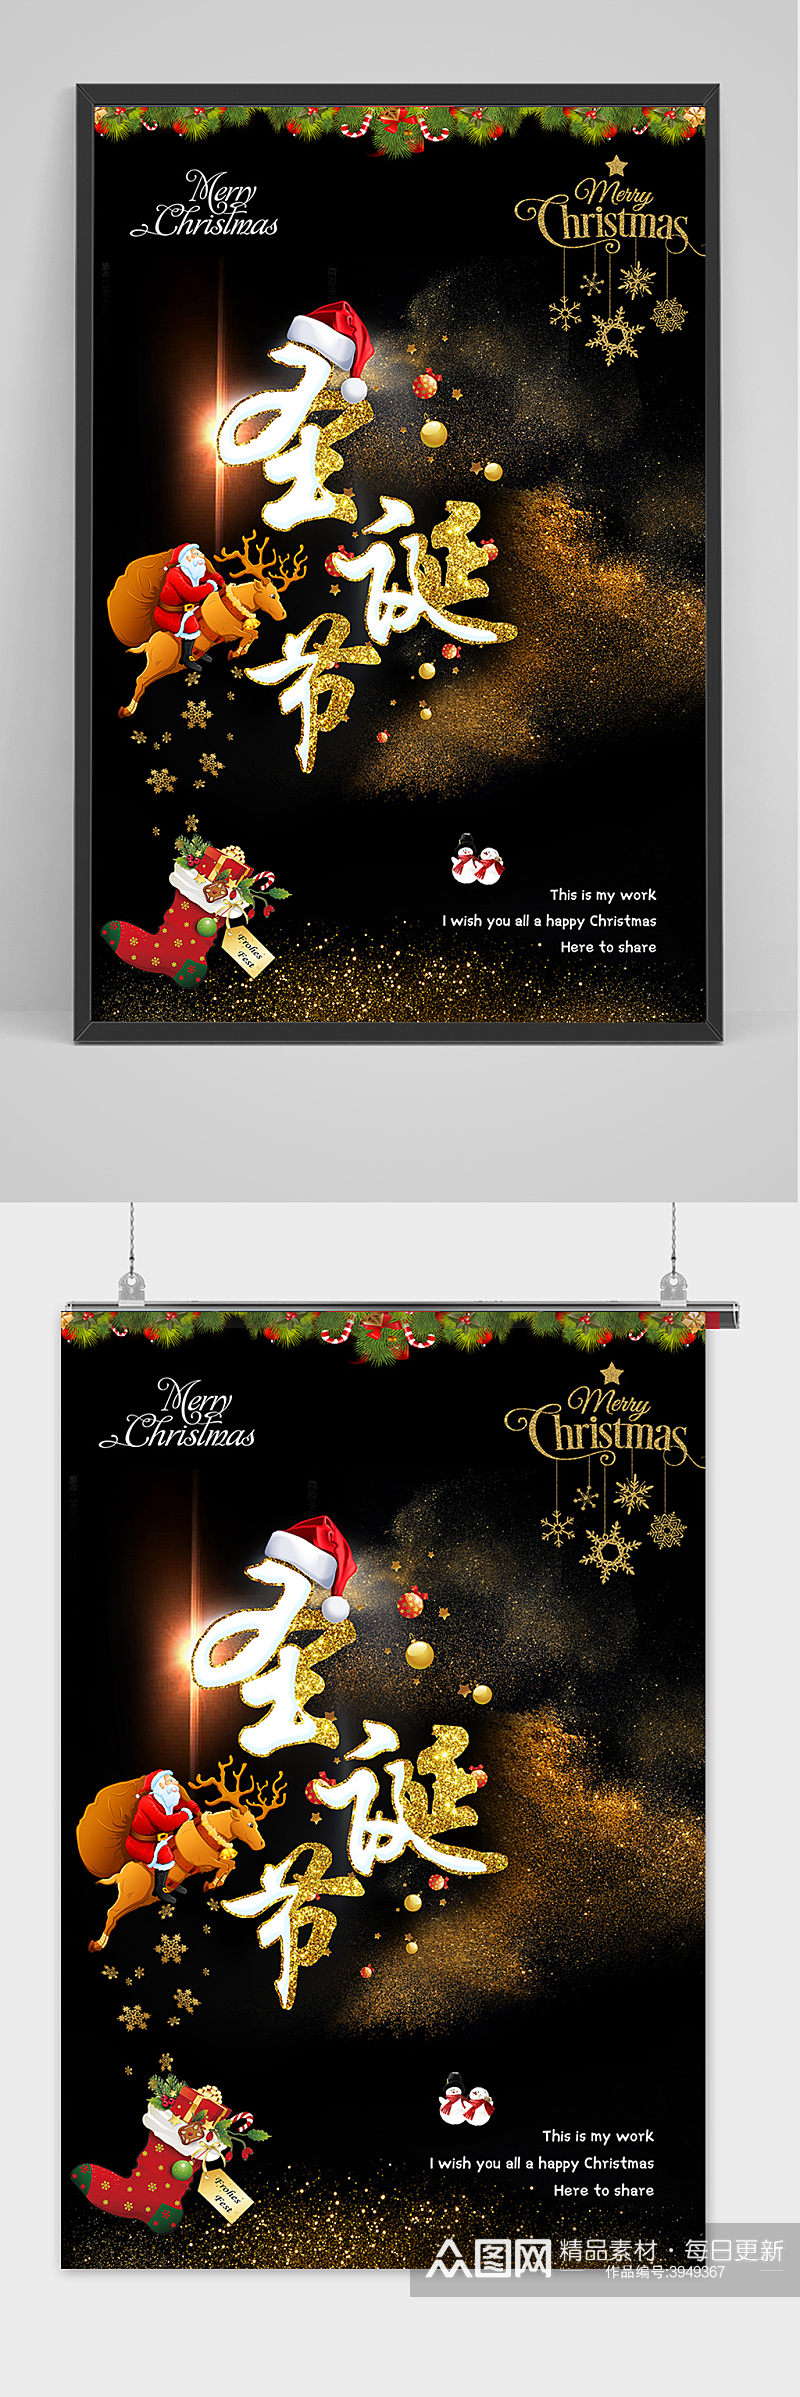 黑金色清新圣诞节快乐宣传海报素材